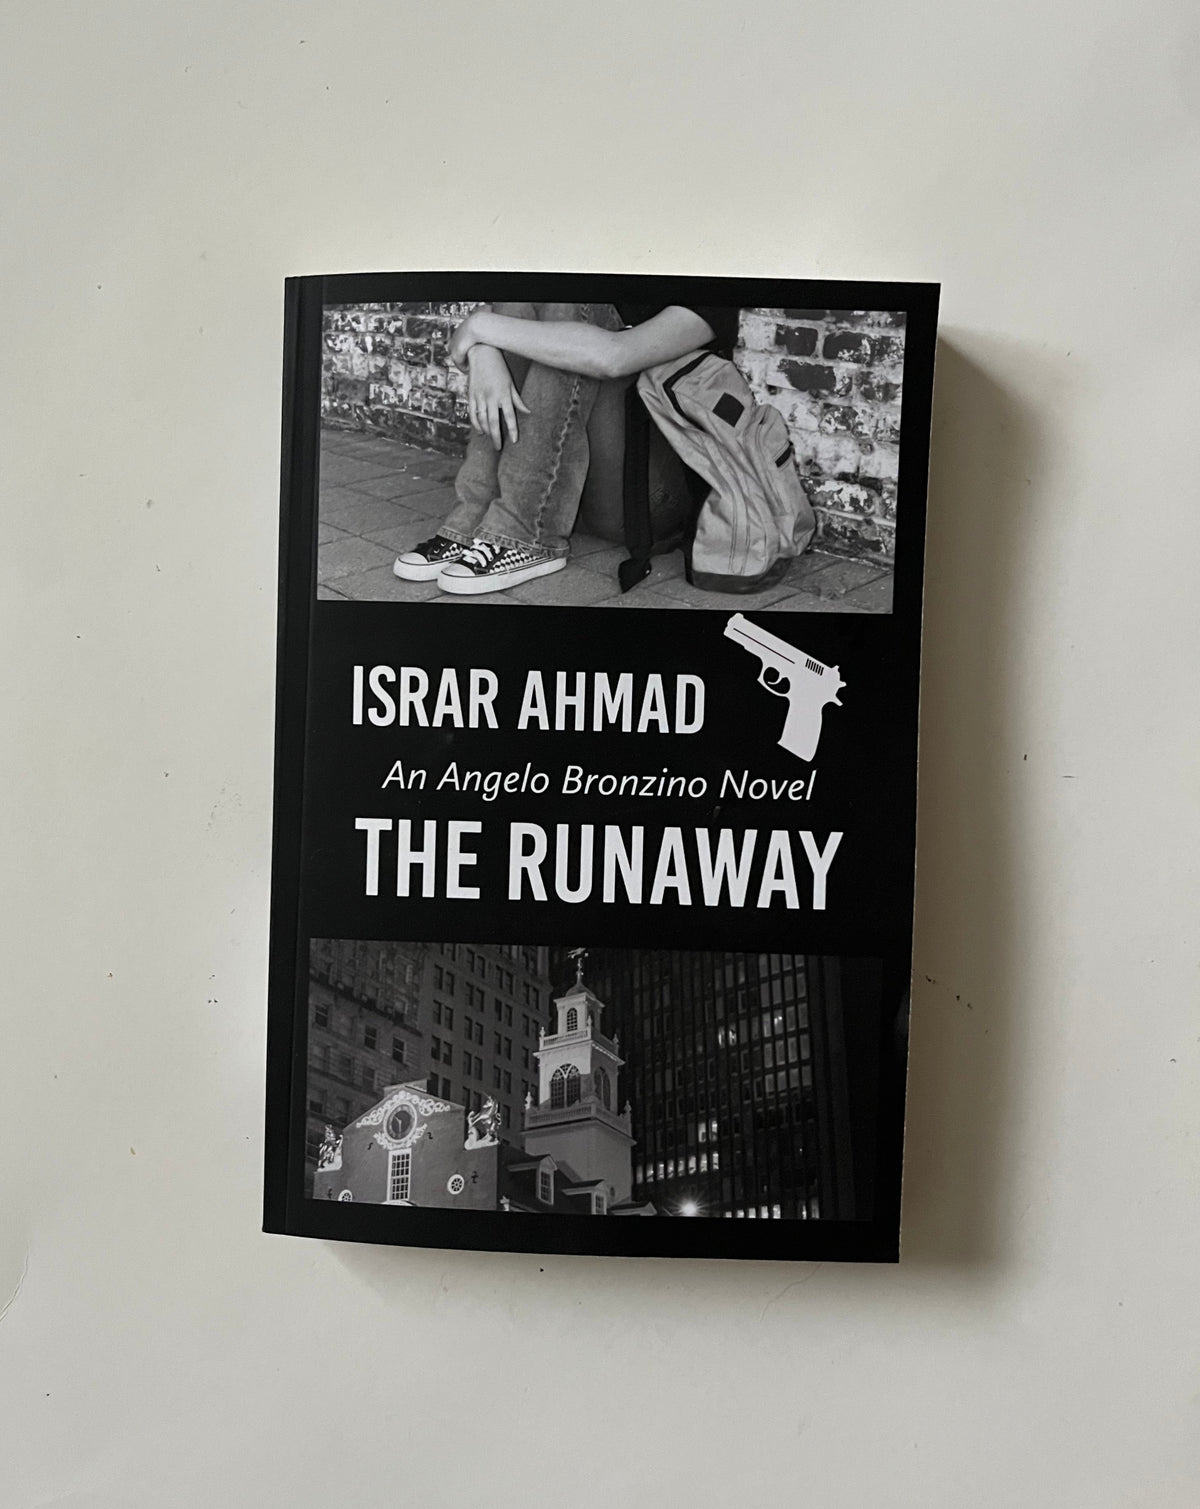 The Runaway: An Angelo Bronzino Novel by Israr Ahmad